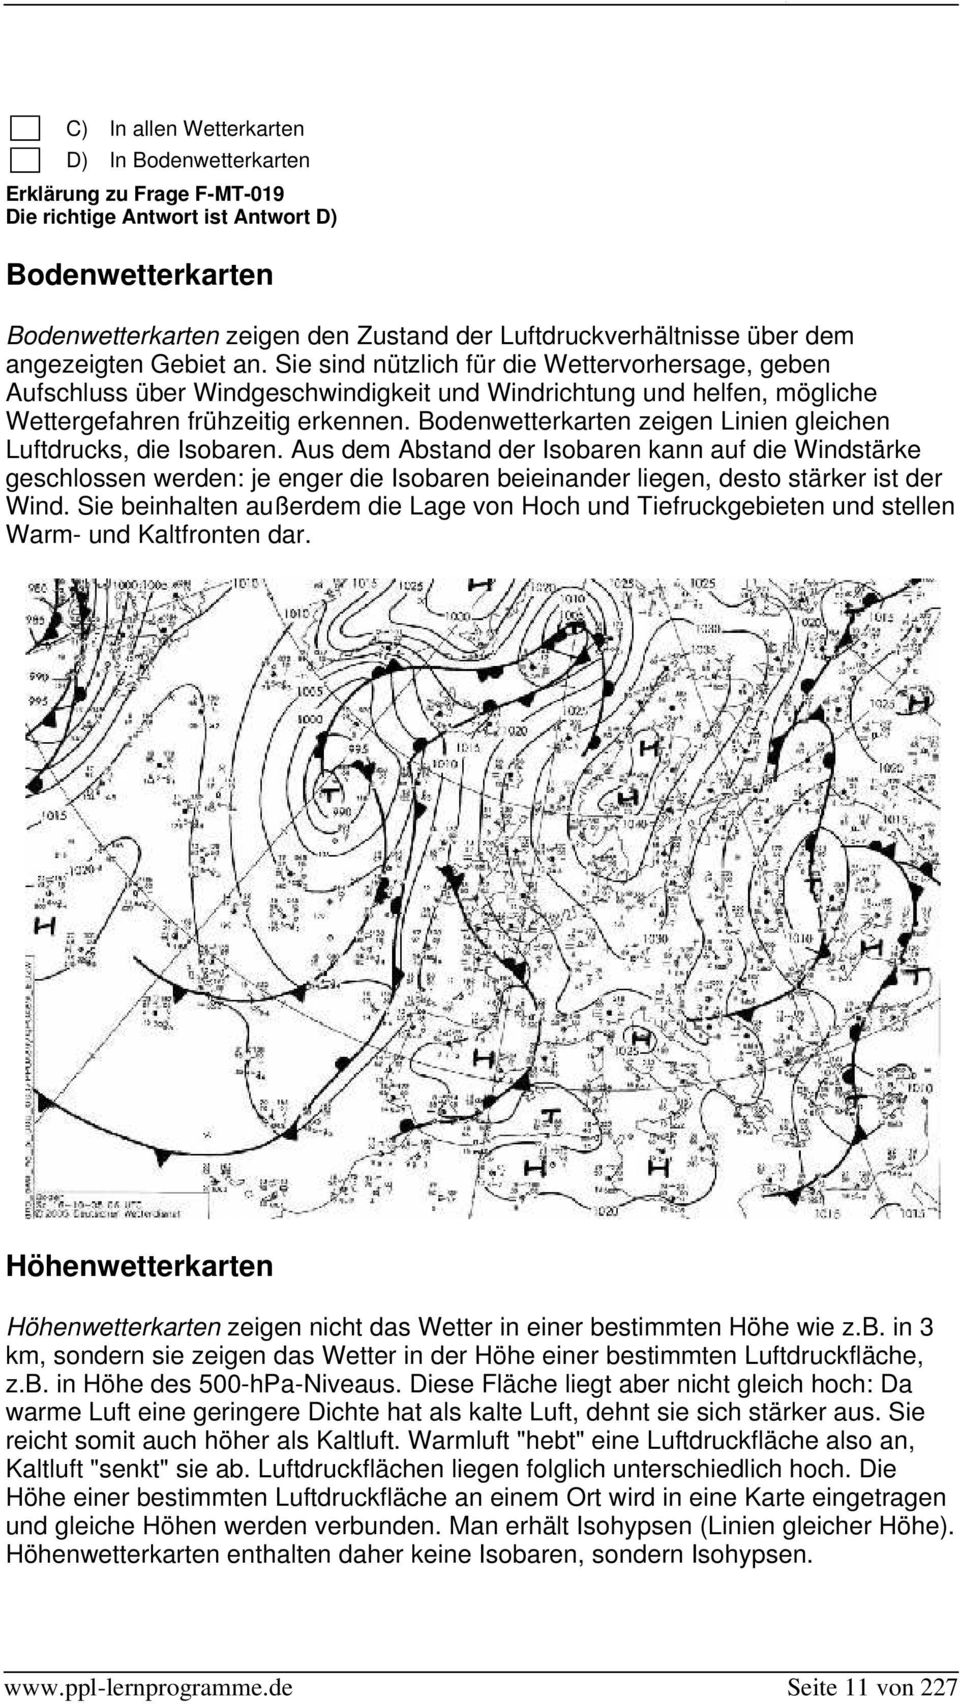 Bodenwetterkarten zeigen Linien gleichen Luftdrucks, die Isobaren.